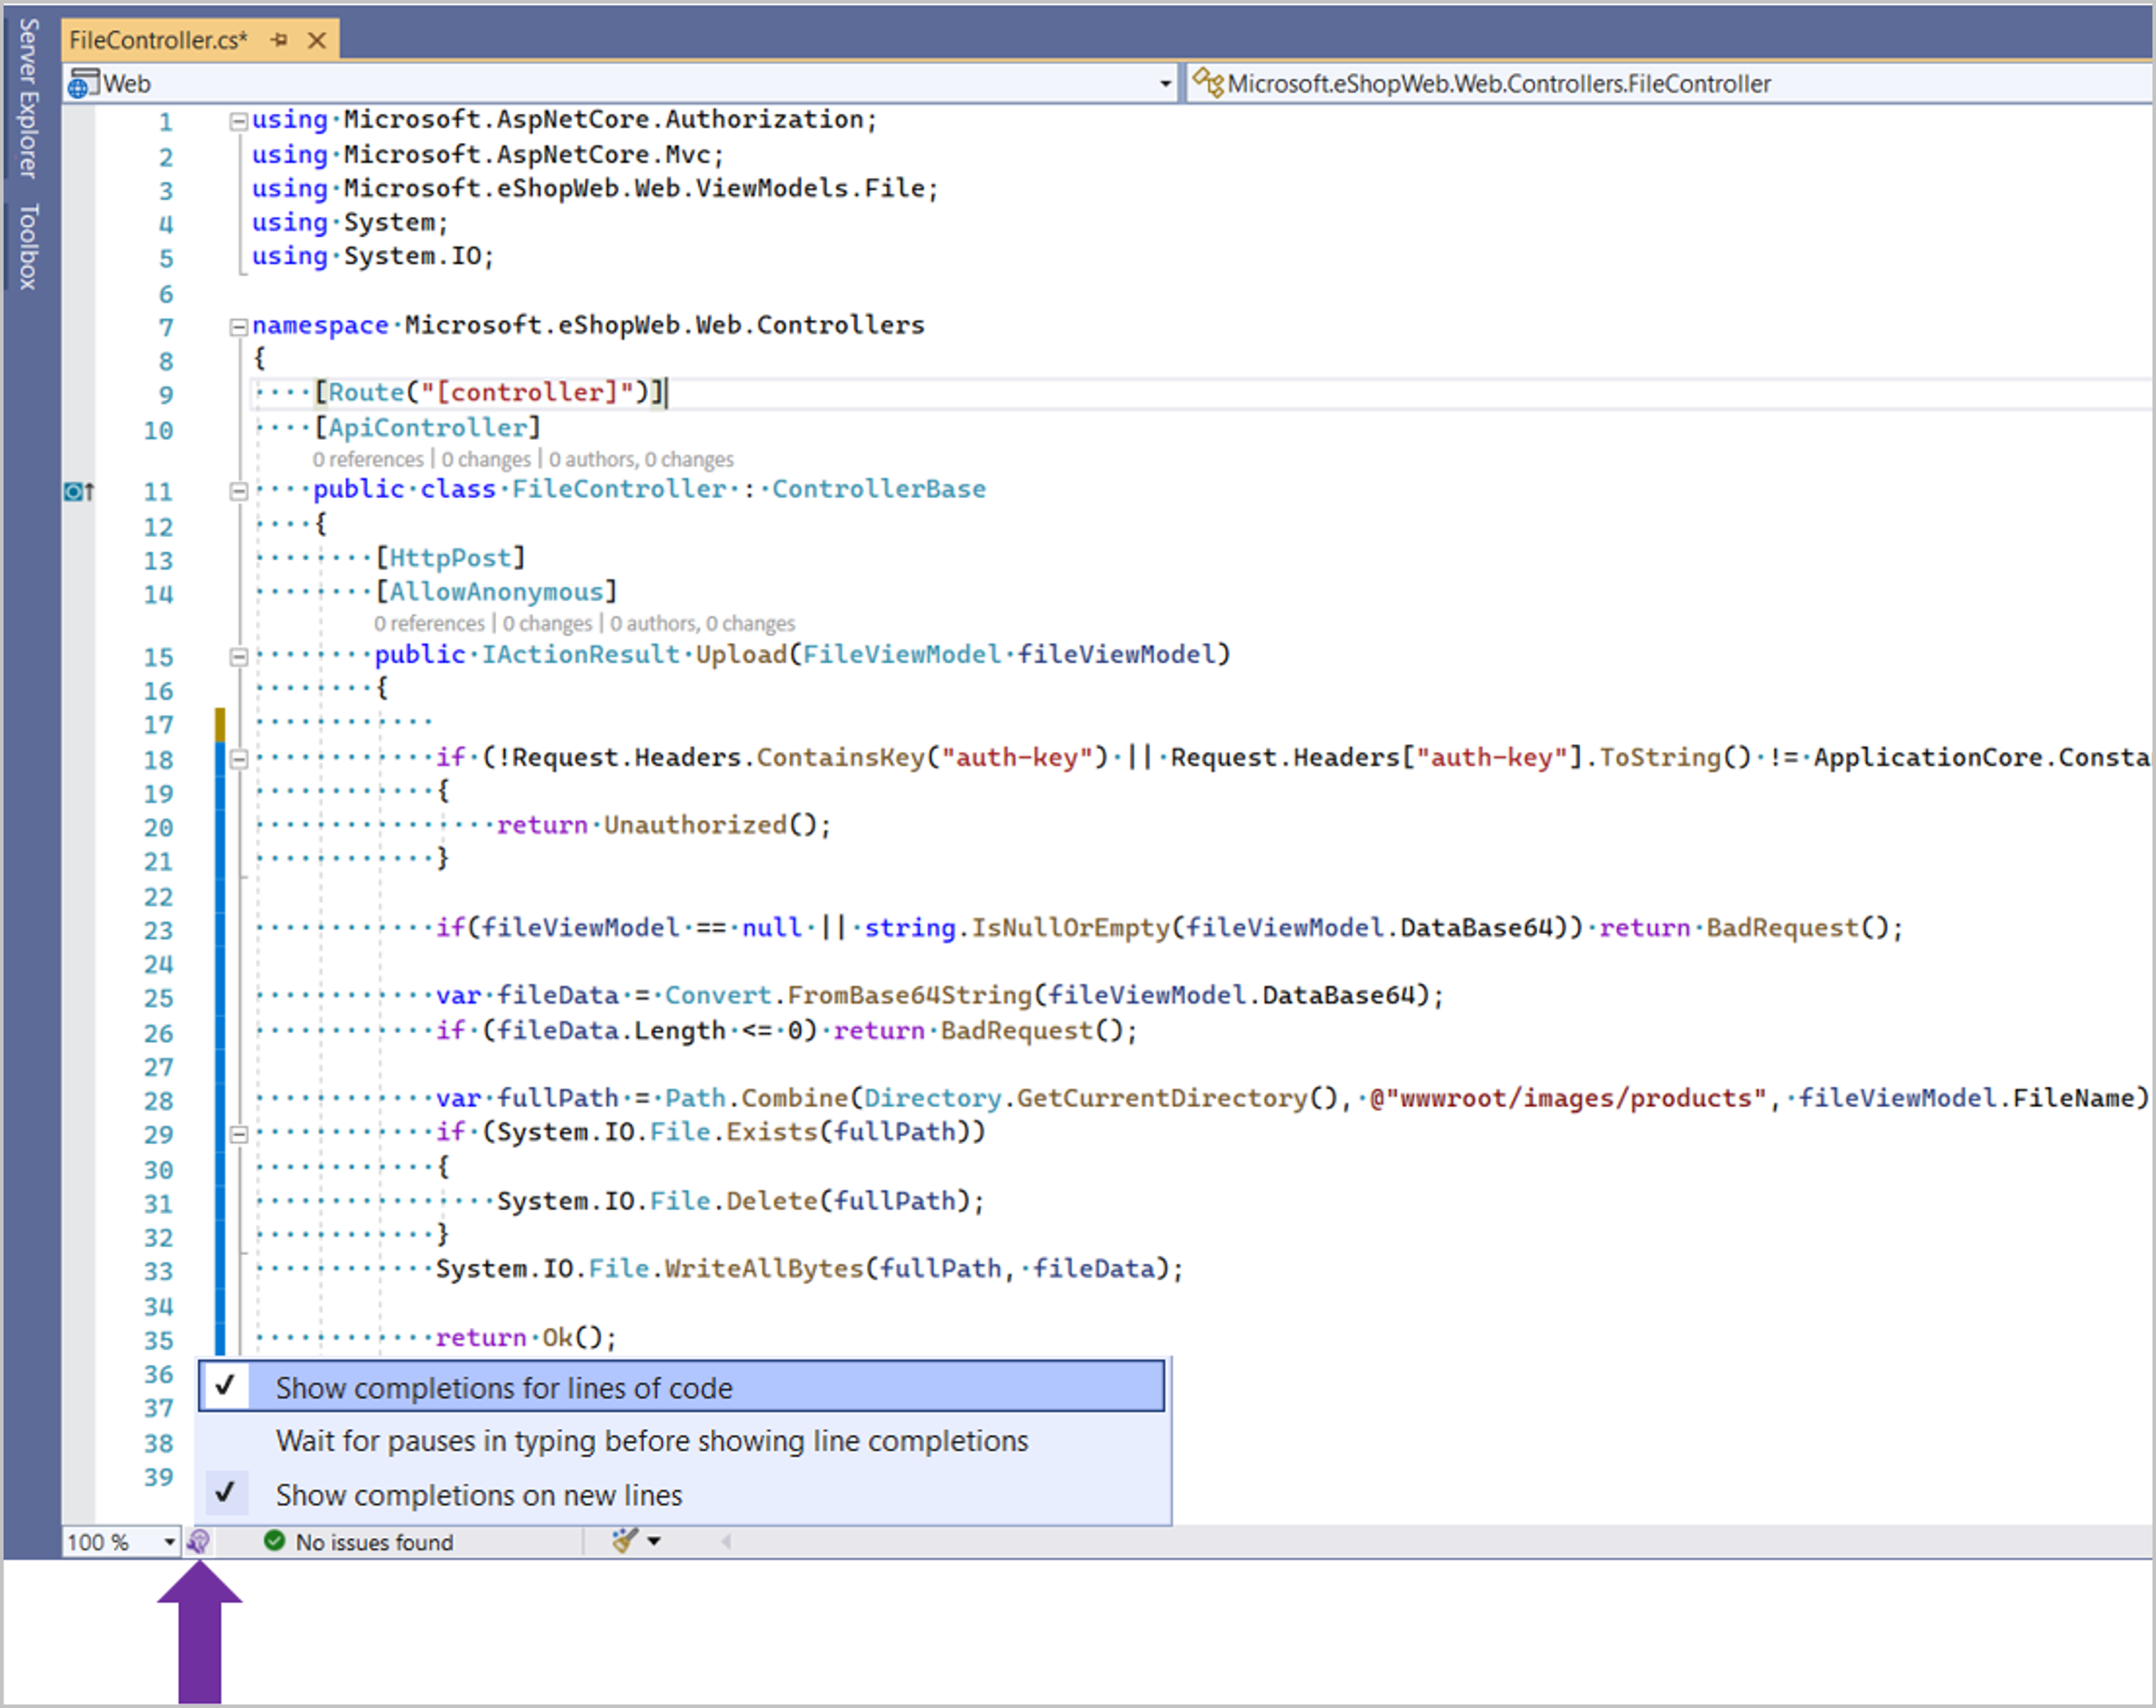 Snímek obrazovky s nastavením zapnutí nebo vypnutí automatických dokončování IntelliCode po celých řádcích